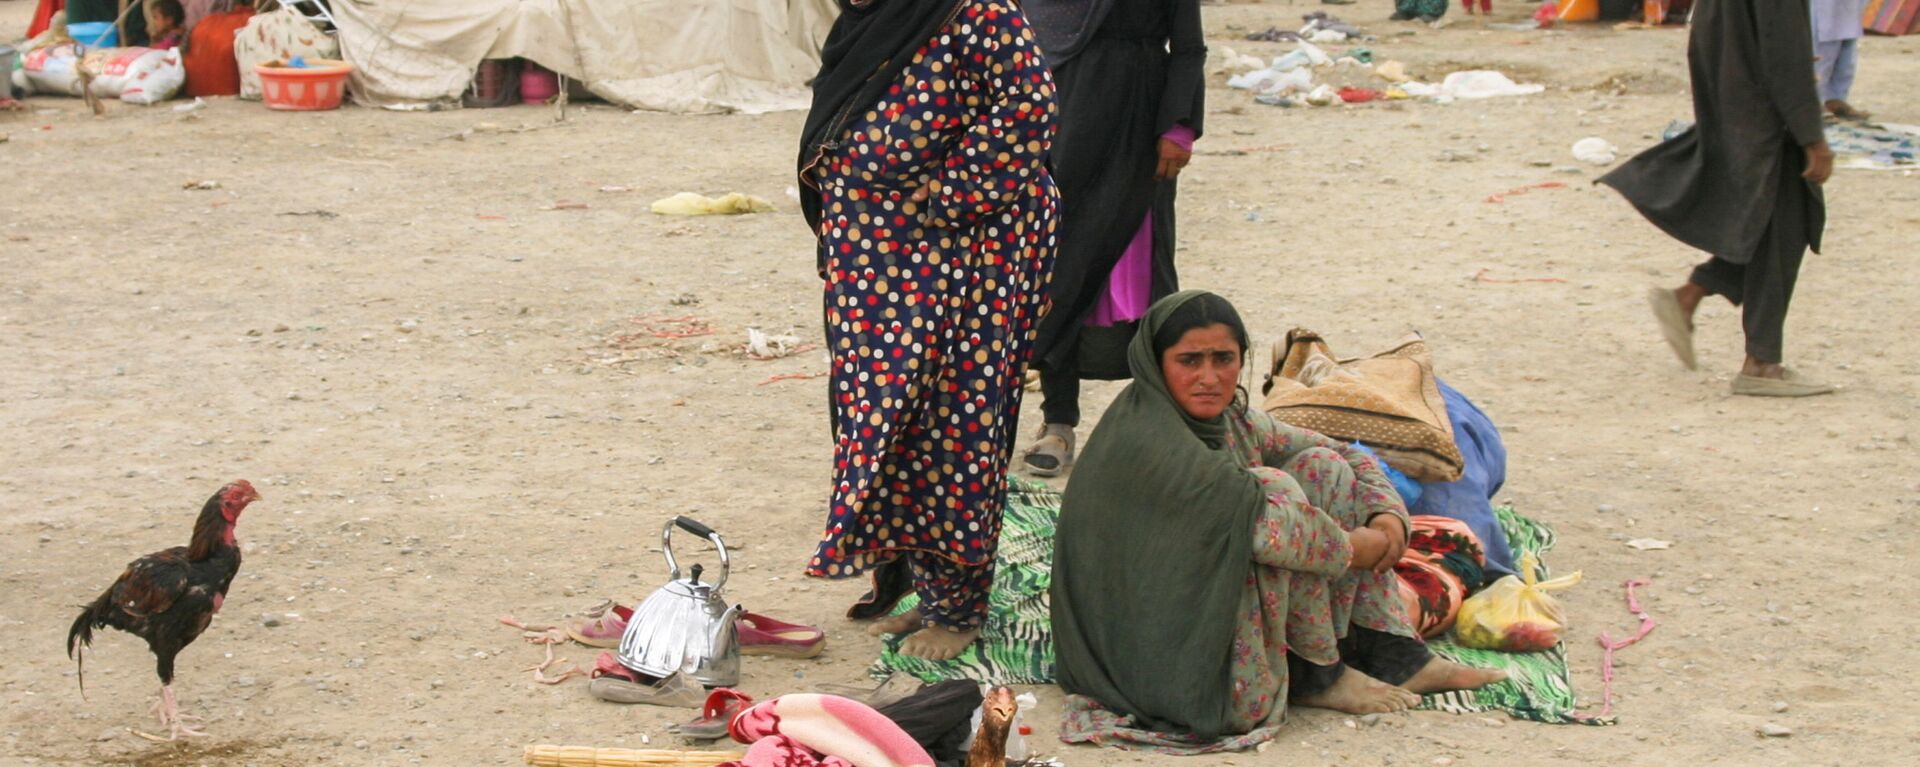 Семья афганских беженцев с вещами возле железнодорожной станции в Чамане, Пакистан - Sputnik Ўзбекистон, 1920, 07.10.2021